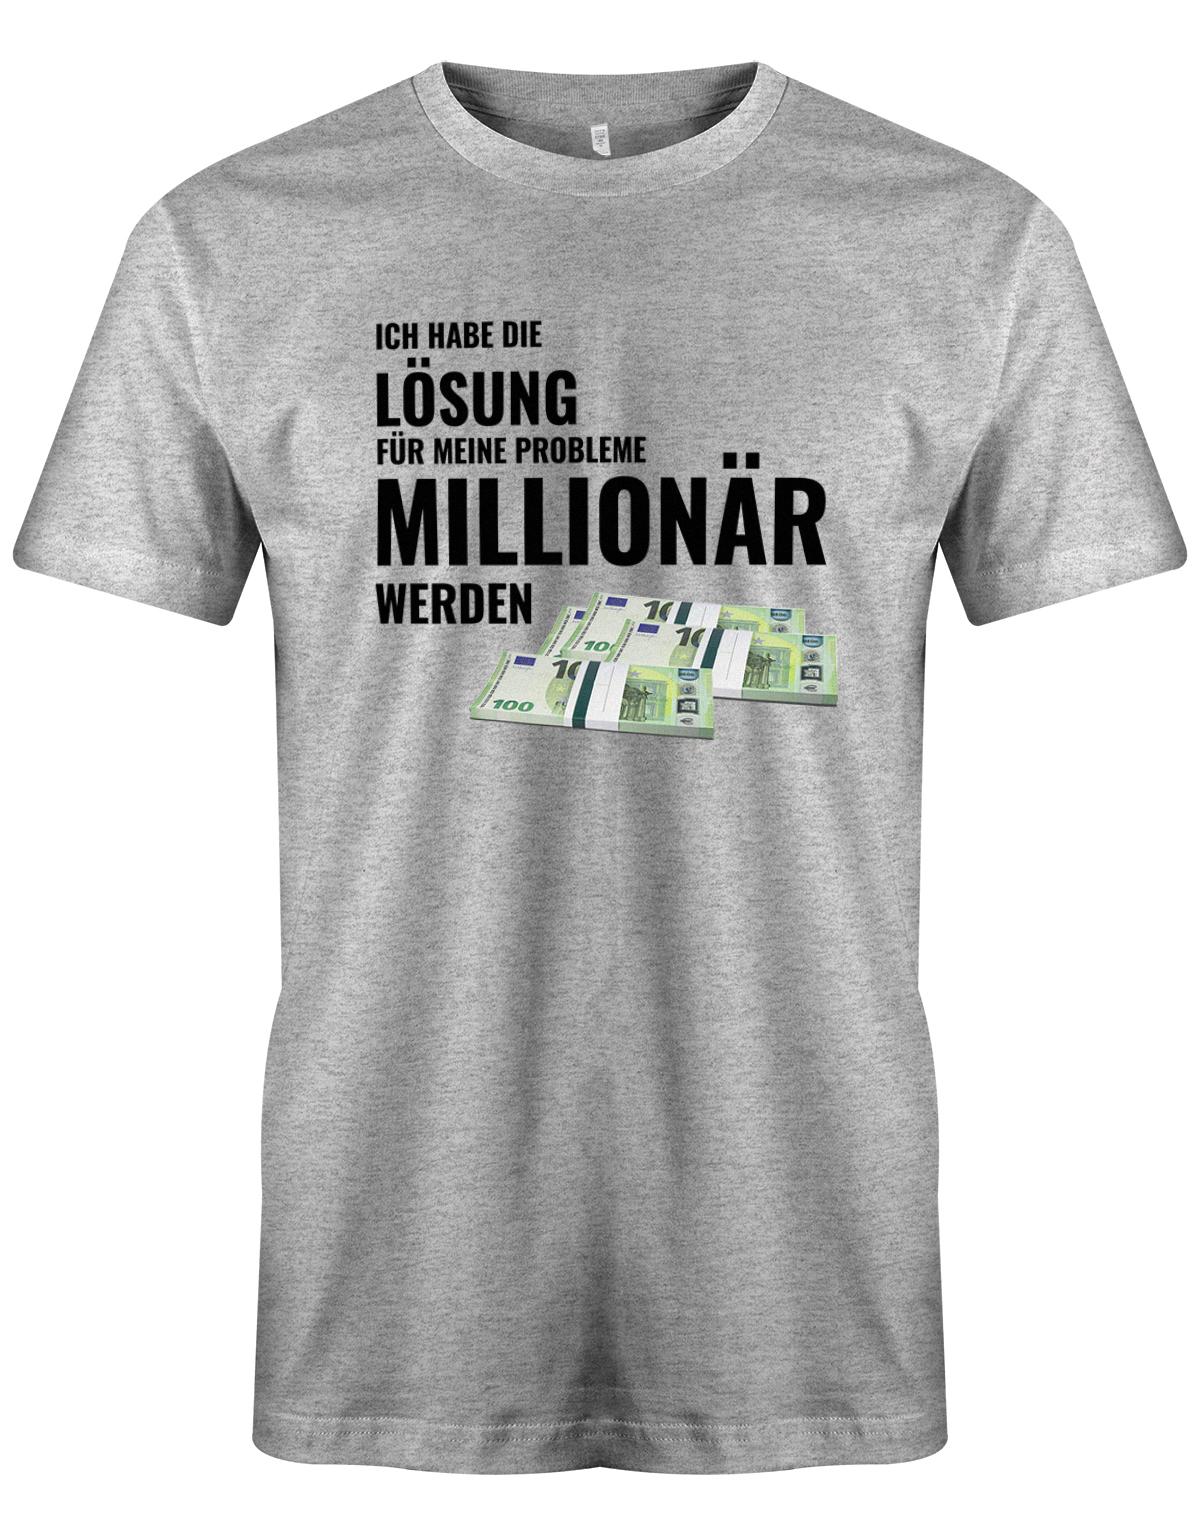 Ich habe die Lösung meiner Probleme - Millionär werden - Herren T-Shirt Grauu